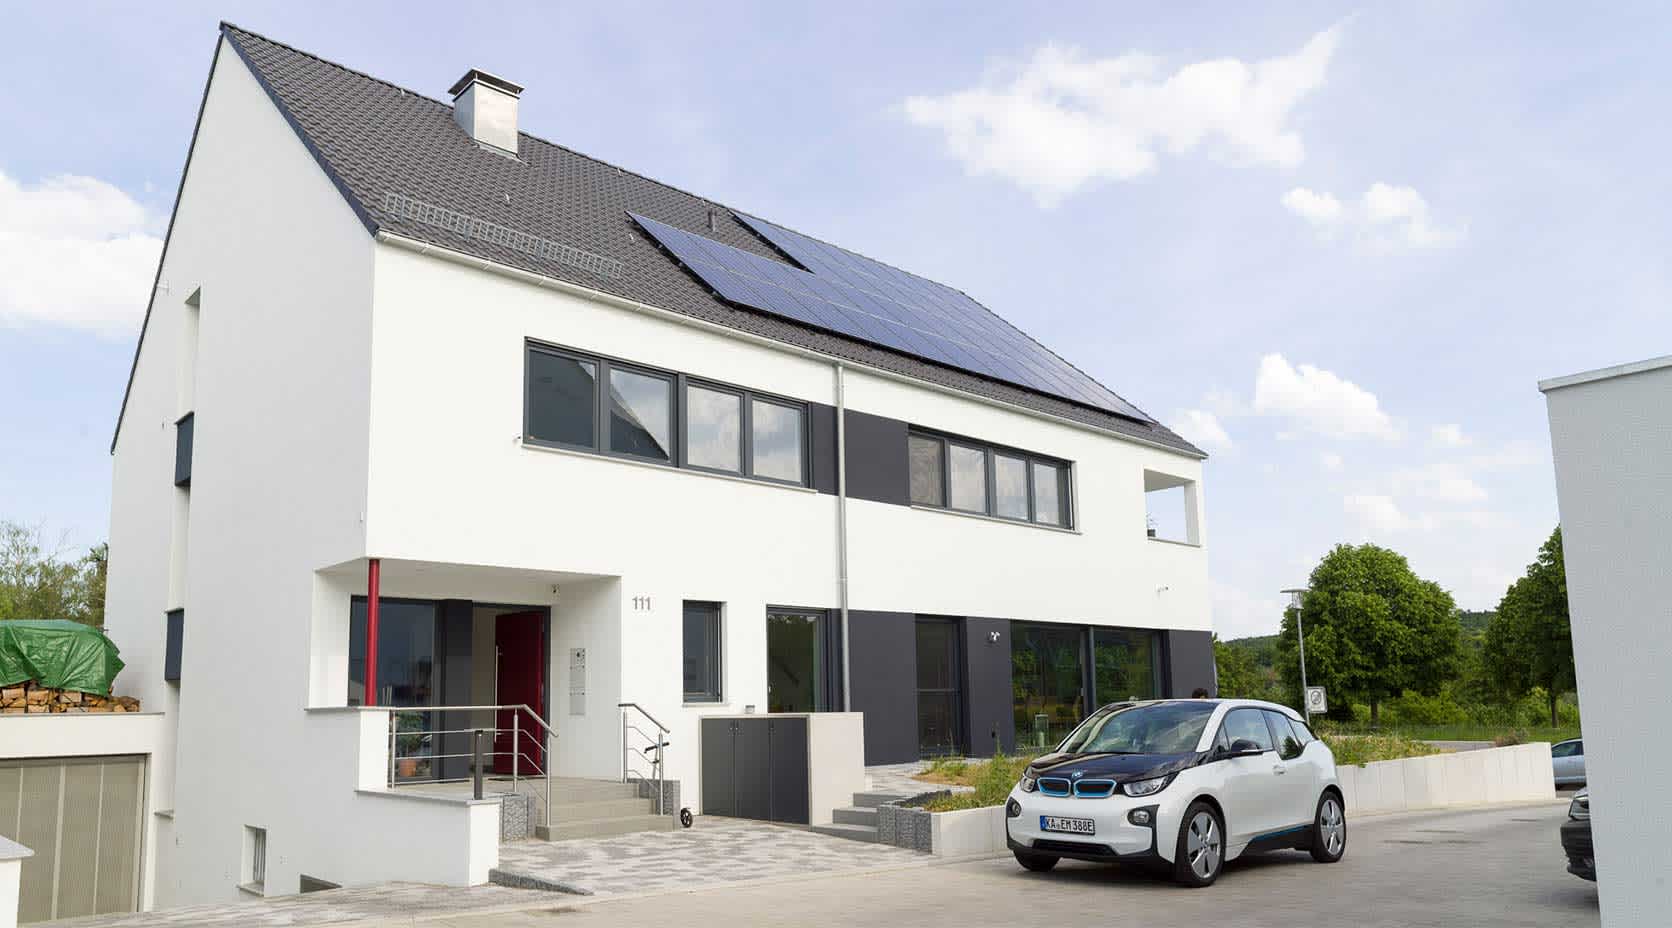 Einfamilienhaus mit Solaranlage und E-Auto